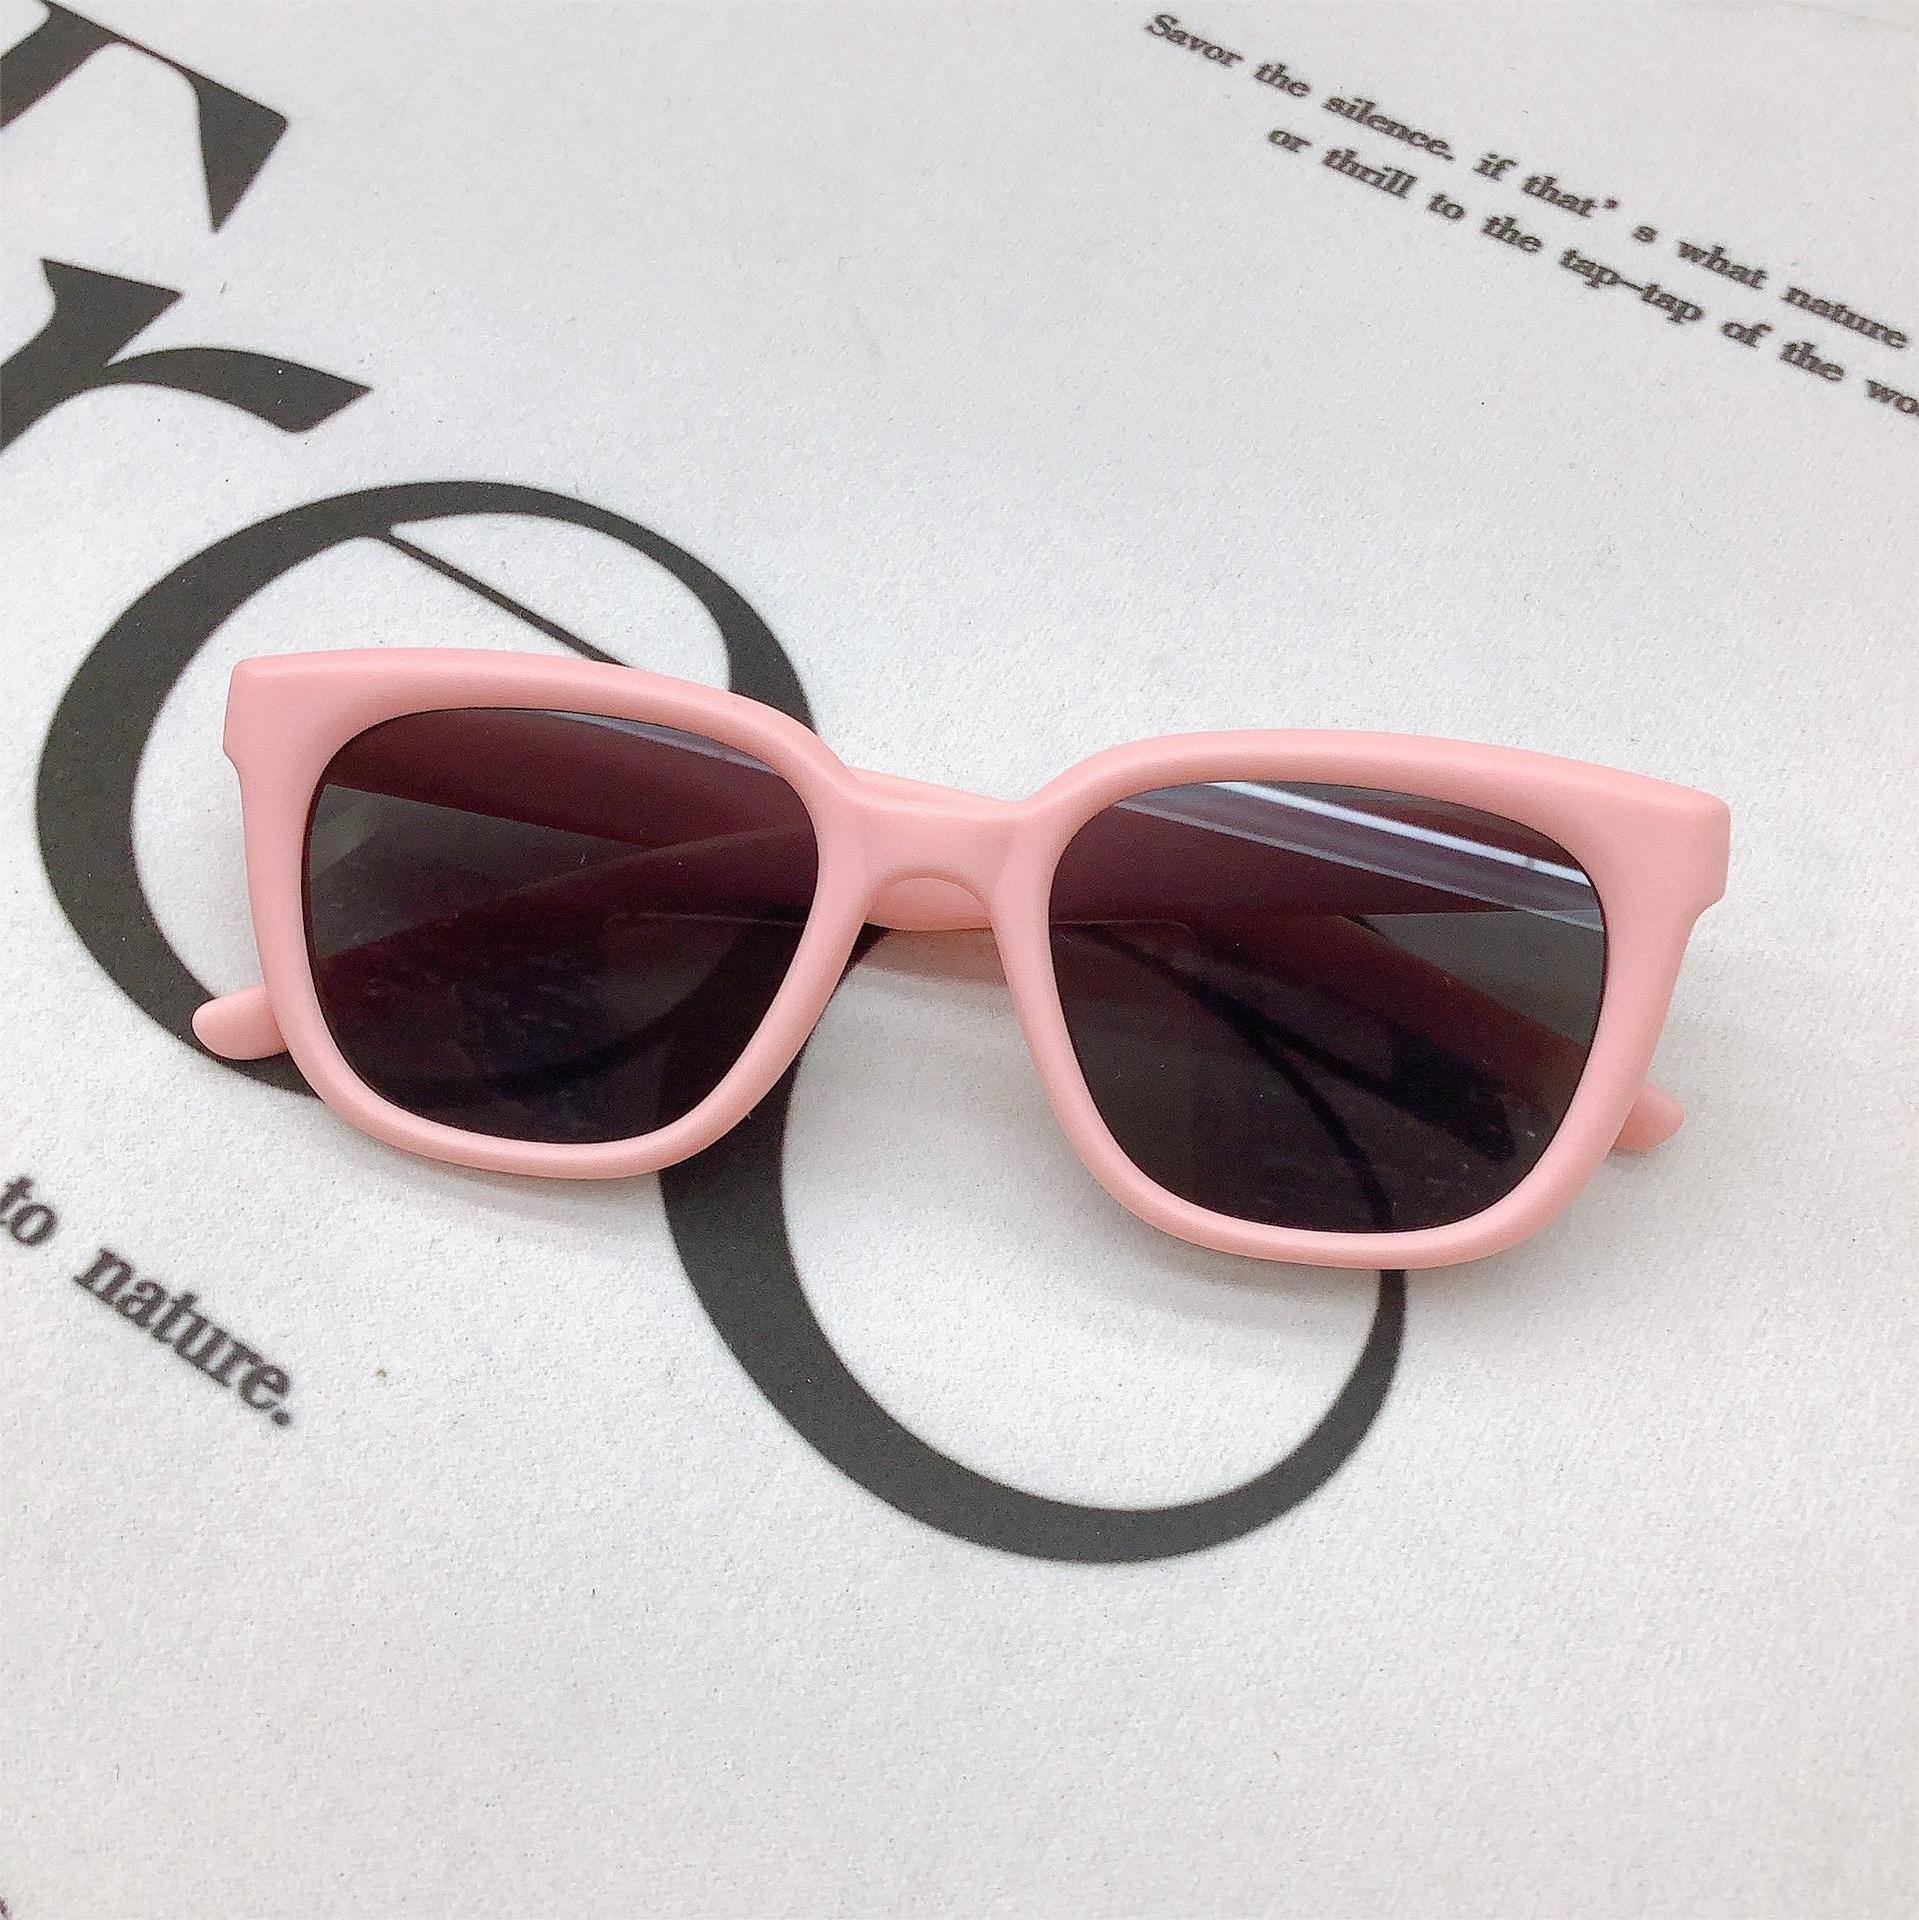 Retro Fashion New Kids Sunglasses Korean Fashion Baby Sunglasses Sun Protection UV Protection Sun-Shade Glasses